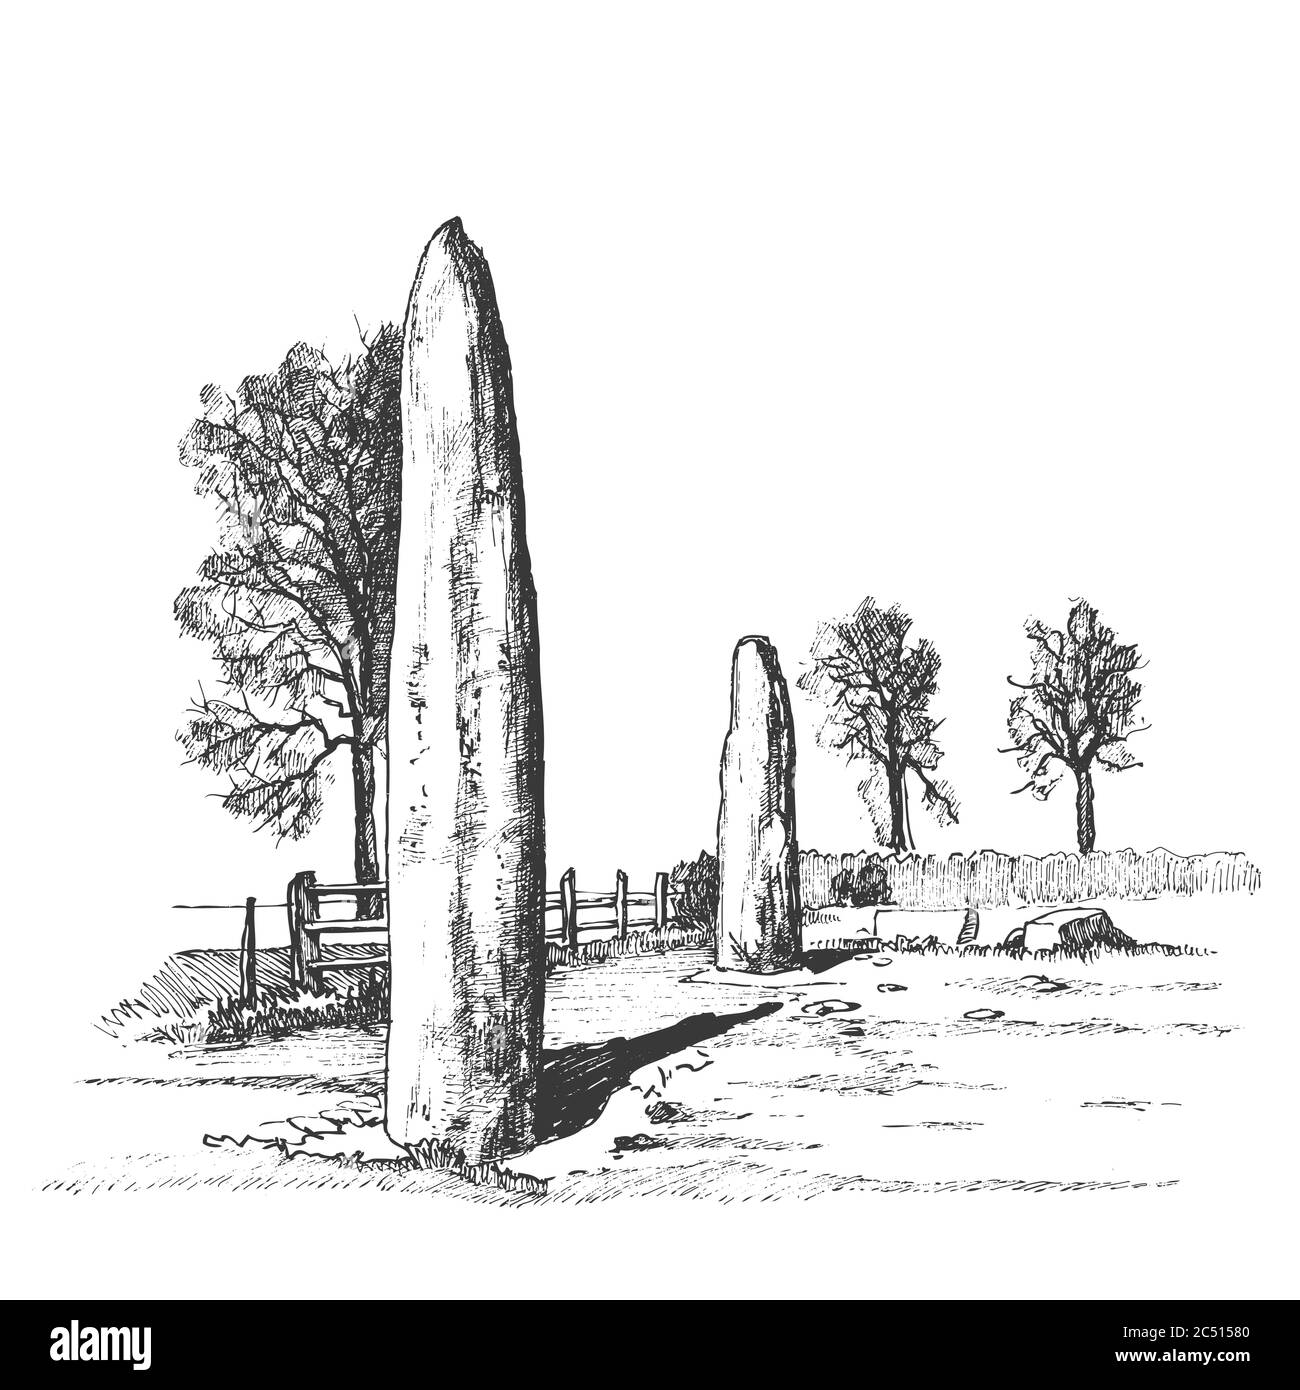 Menhire, vertikale Steine unbekannter Herkunft, Vektorgrafik. Grafische Skizzenzeichnung. Megalithen. Steinzeit. Stock Vektor